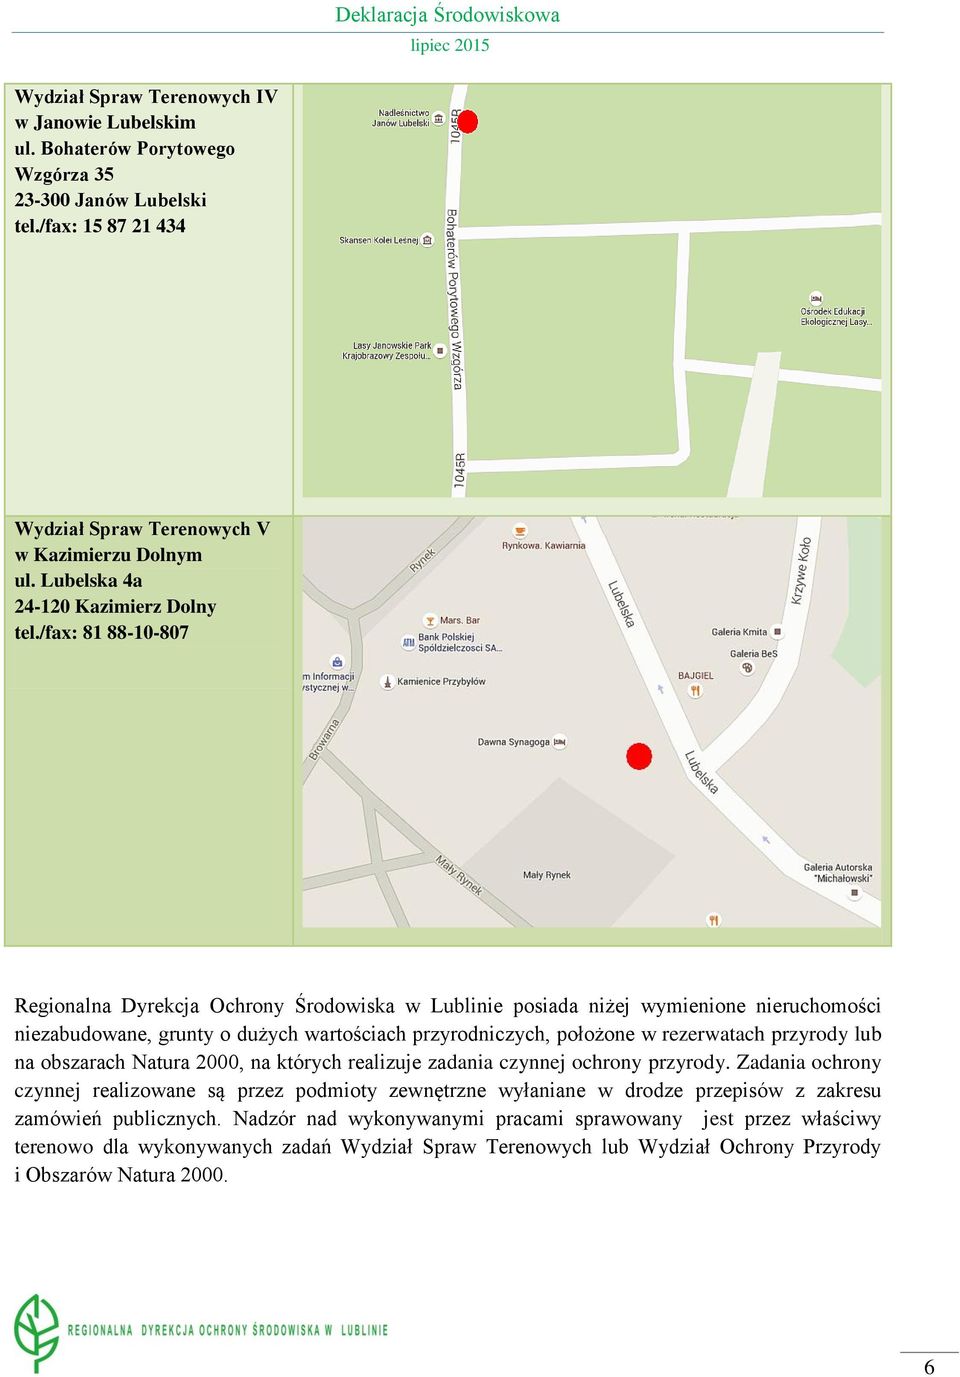 /fax: 81 88-10-807 Regionalna Dyrekcja Ochrony Środowiska w Lublinie posiada niżej wymienione nieruchomości niezabudowane, grunty o dużych wartościach przyrodniczych, położone w rezerwatach przyrody